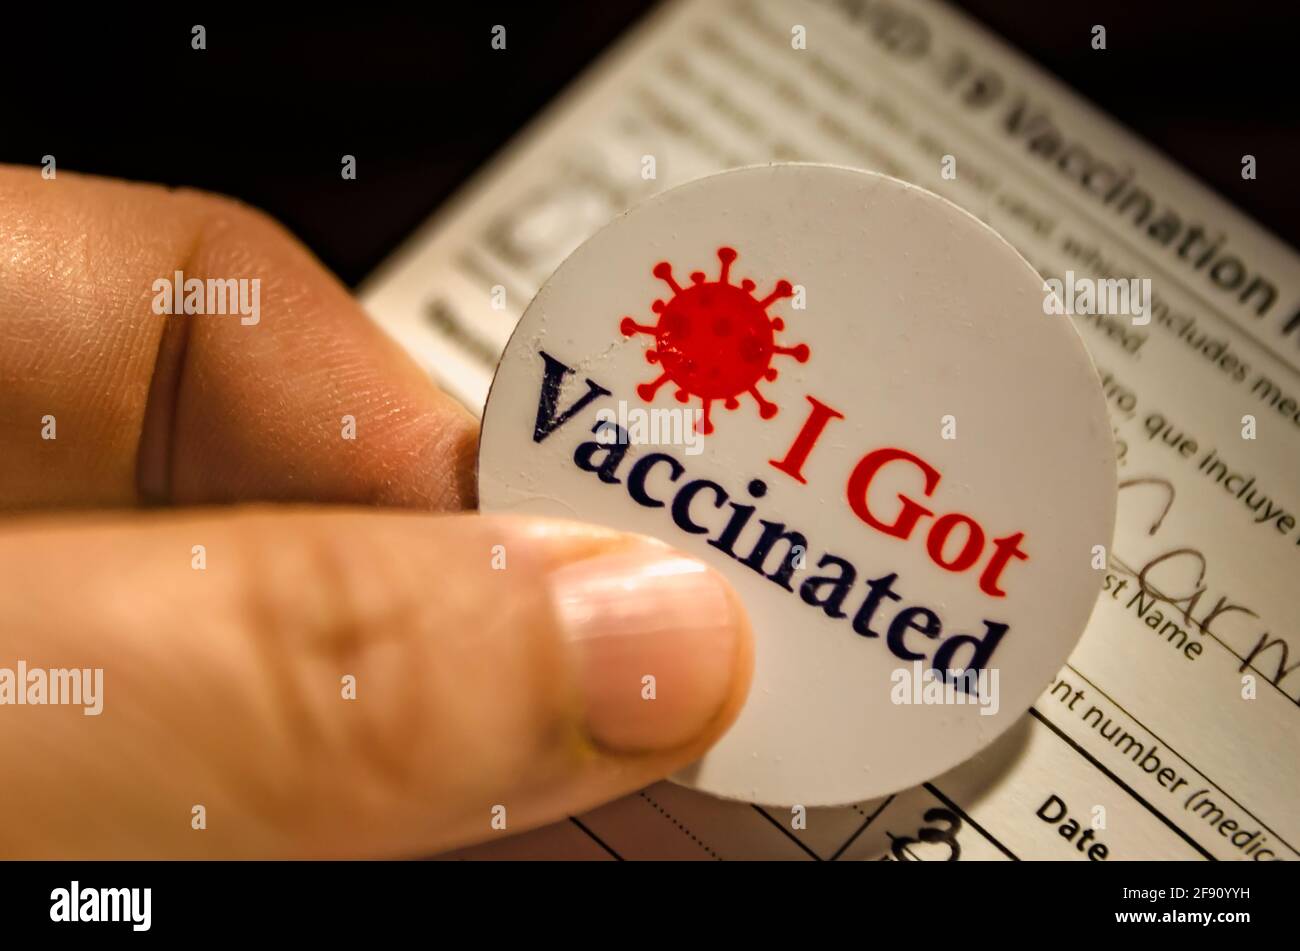 Un paziente è in possesso di un adesivo "i got vaccined" e di una scheda di vaccinazione COVID-19 dopo aver ricevuto il vaccino COVID-19 da Pfizer-BioNTech a Mobile, Alabama. Foto Stock